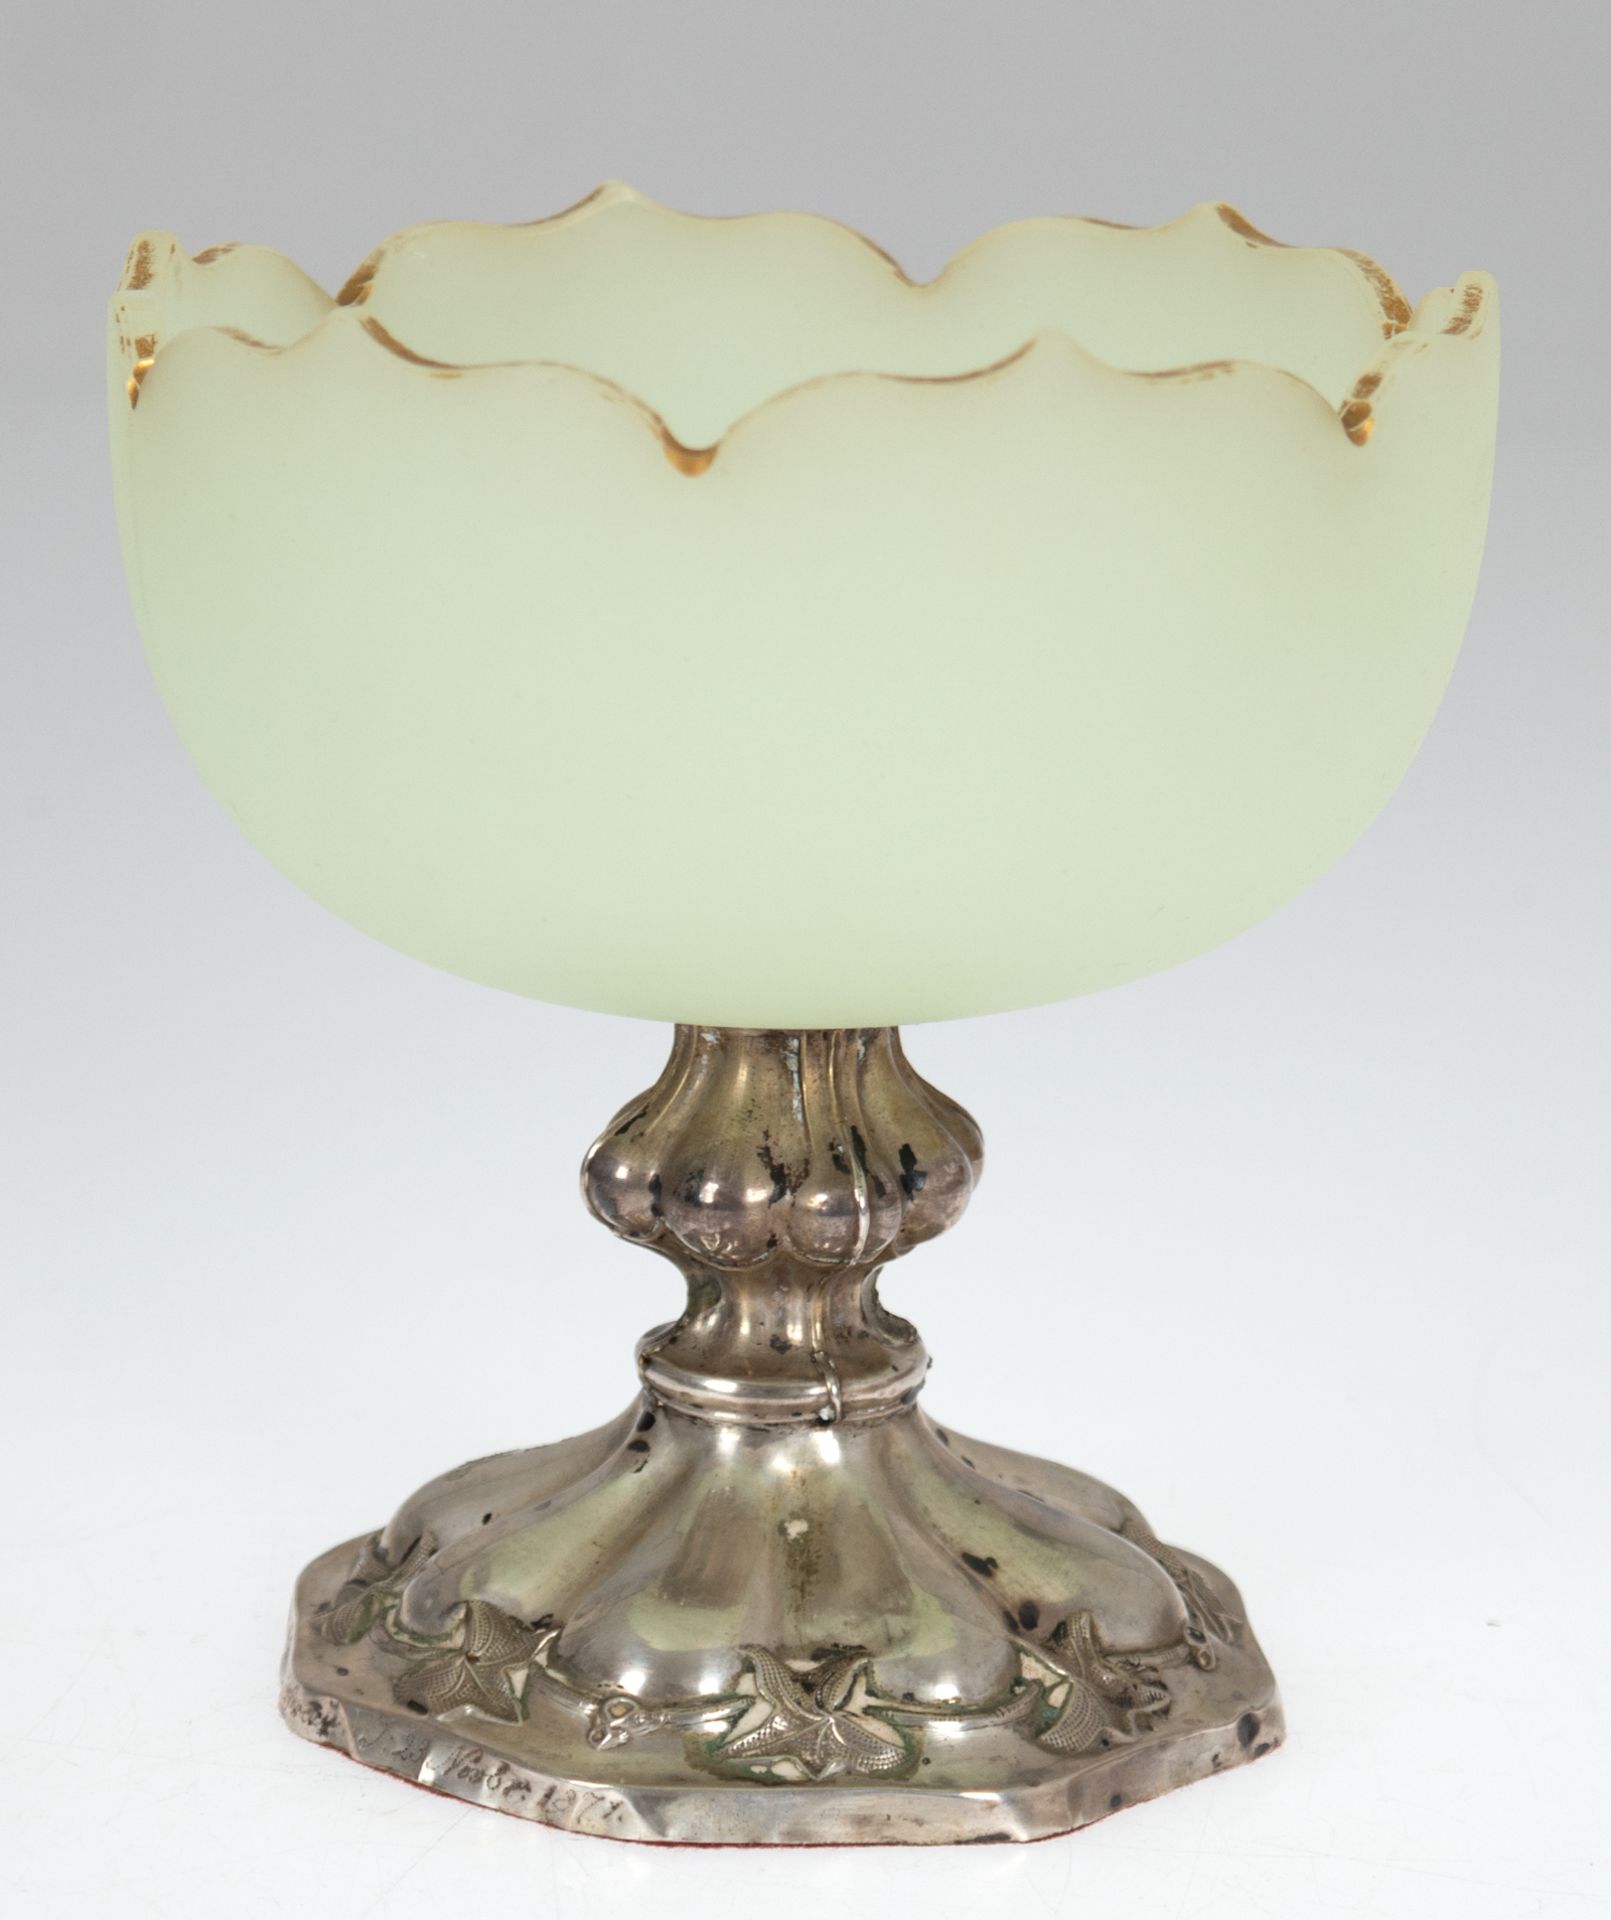 Biedermeier-Tafelaufsatz, Silberfuß mit Blattrelief und hellgrüner Glasschale mit geschweiftem Gold